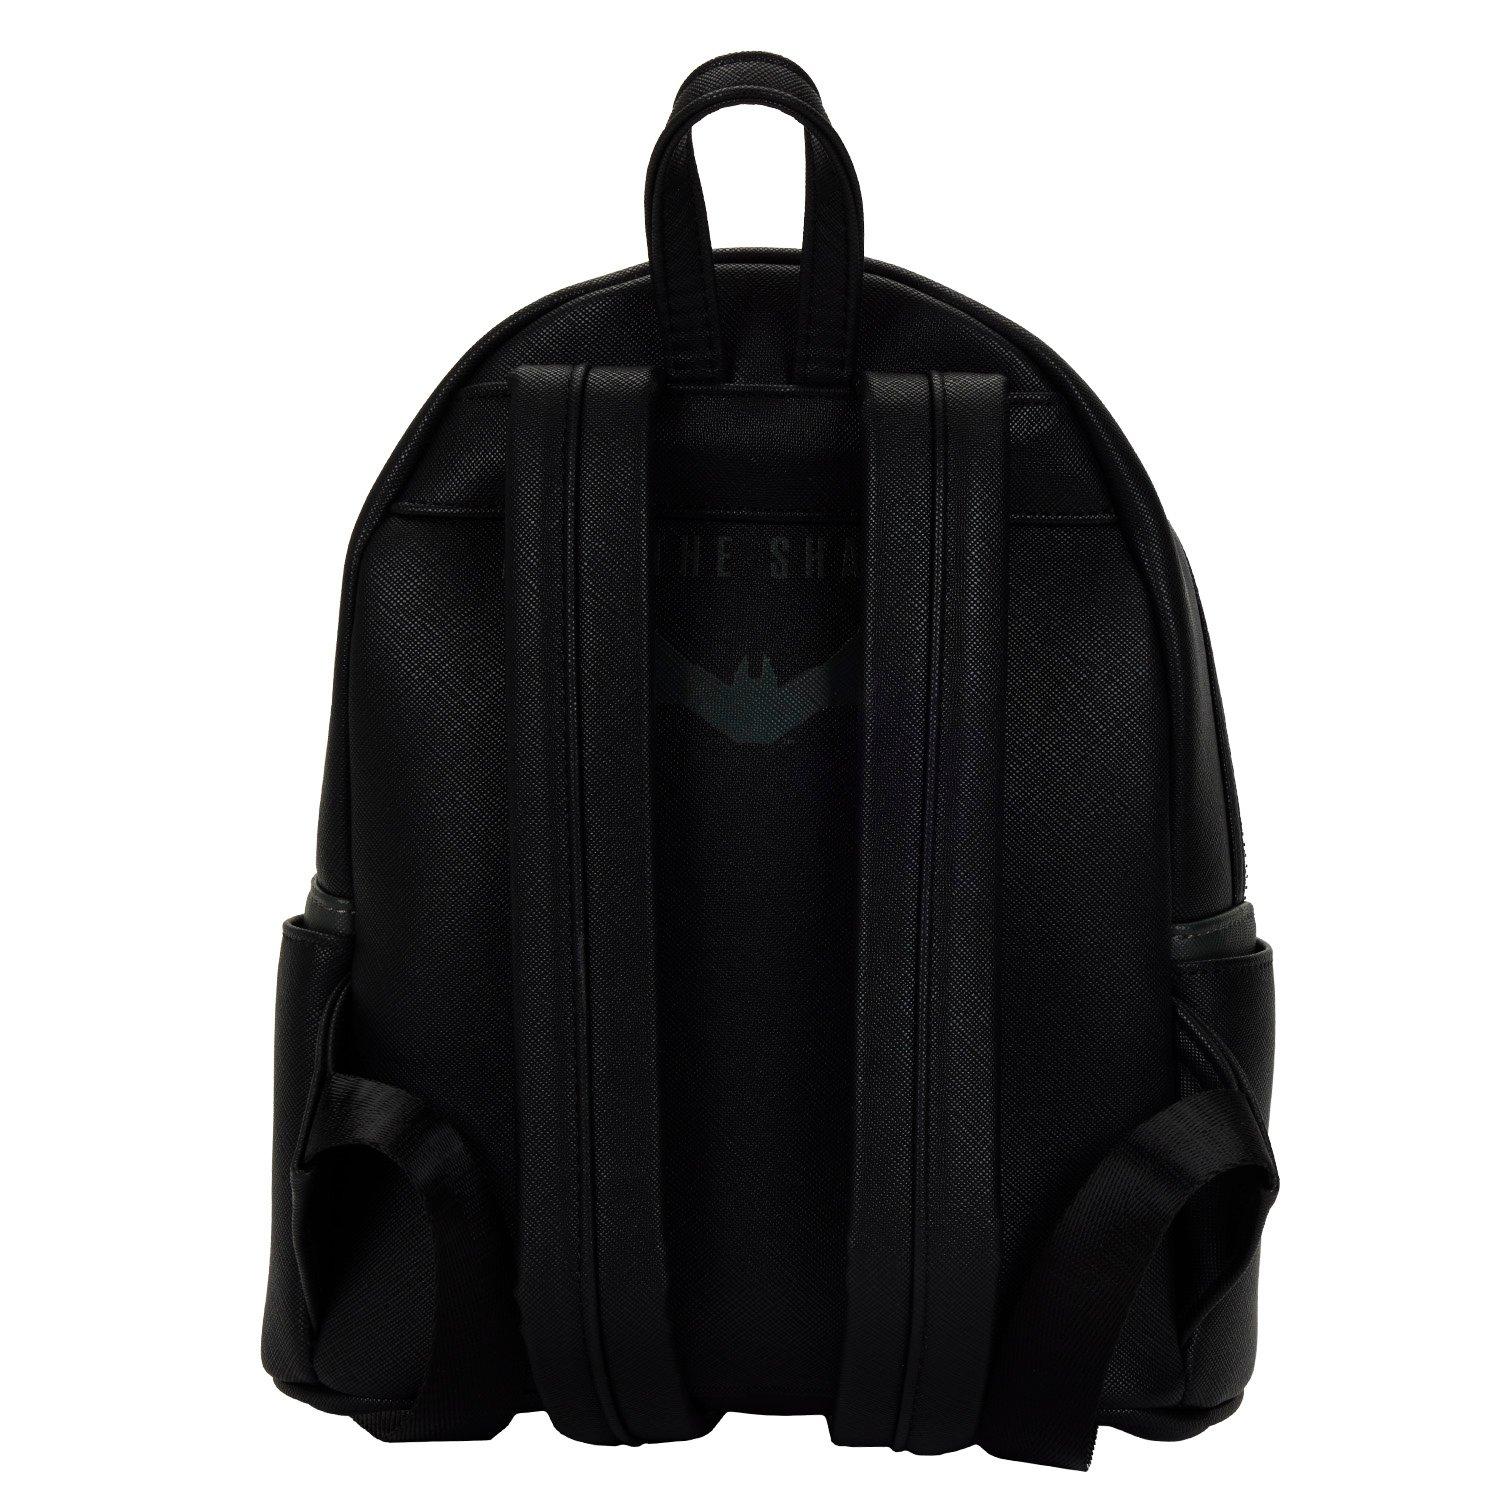 Loungefly Batman Cosplay Mini Backpack